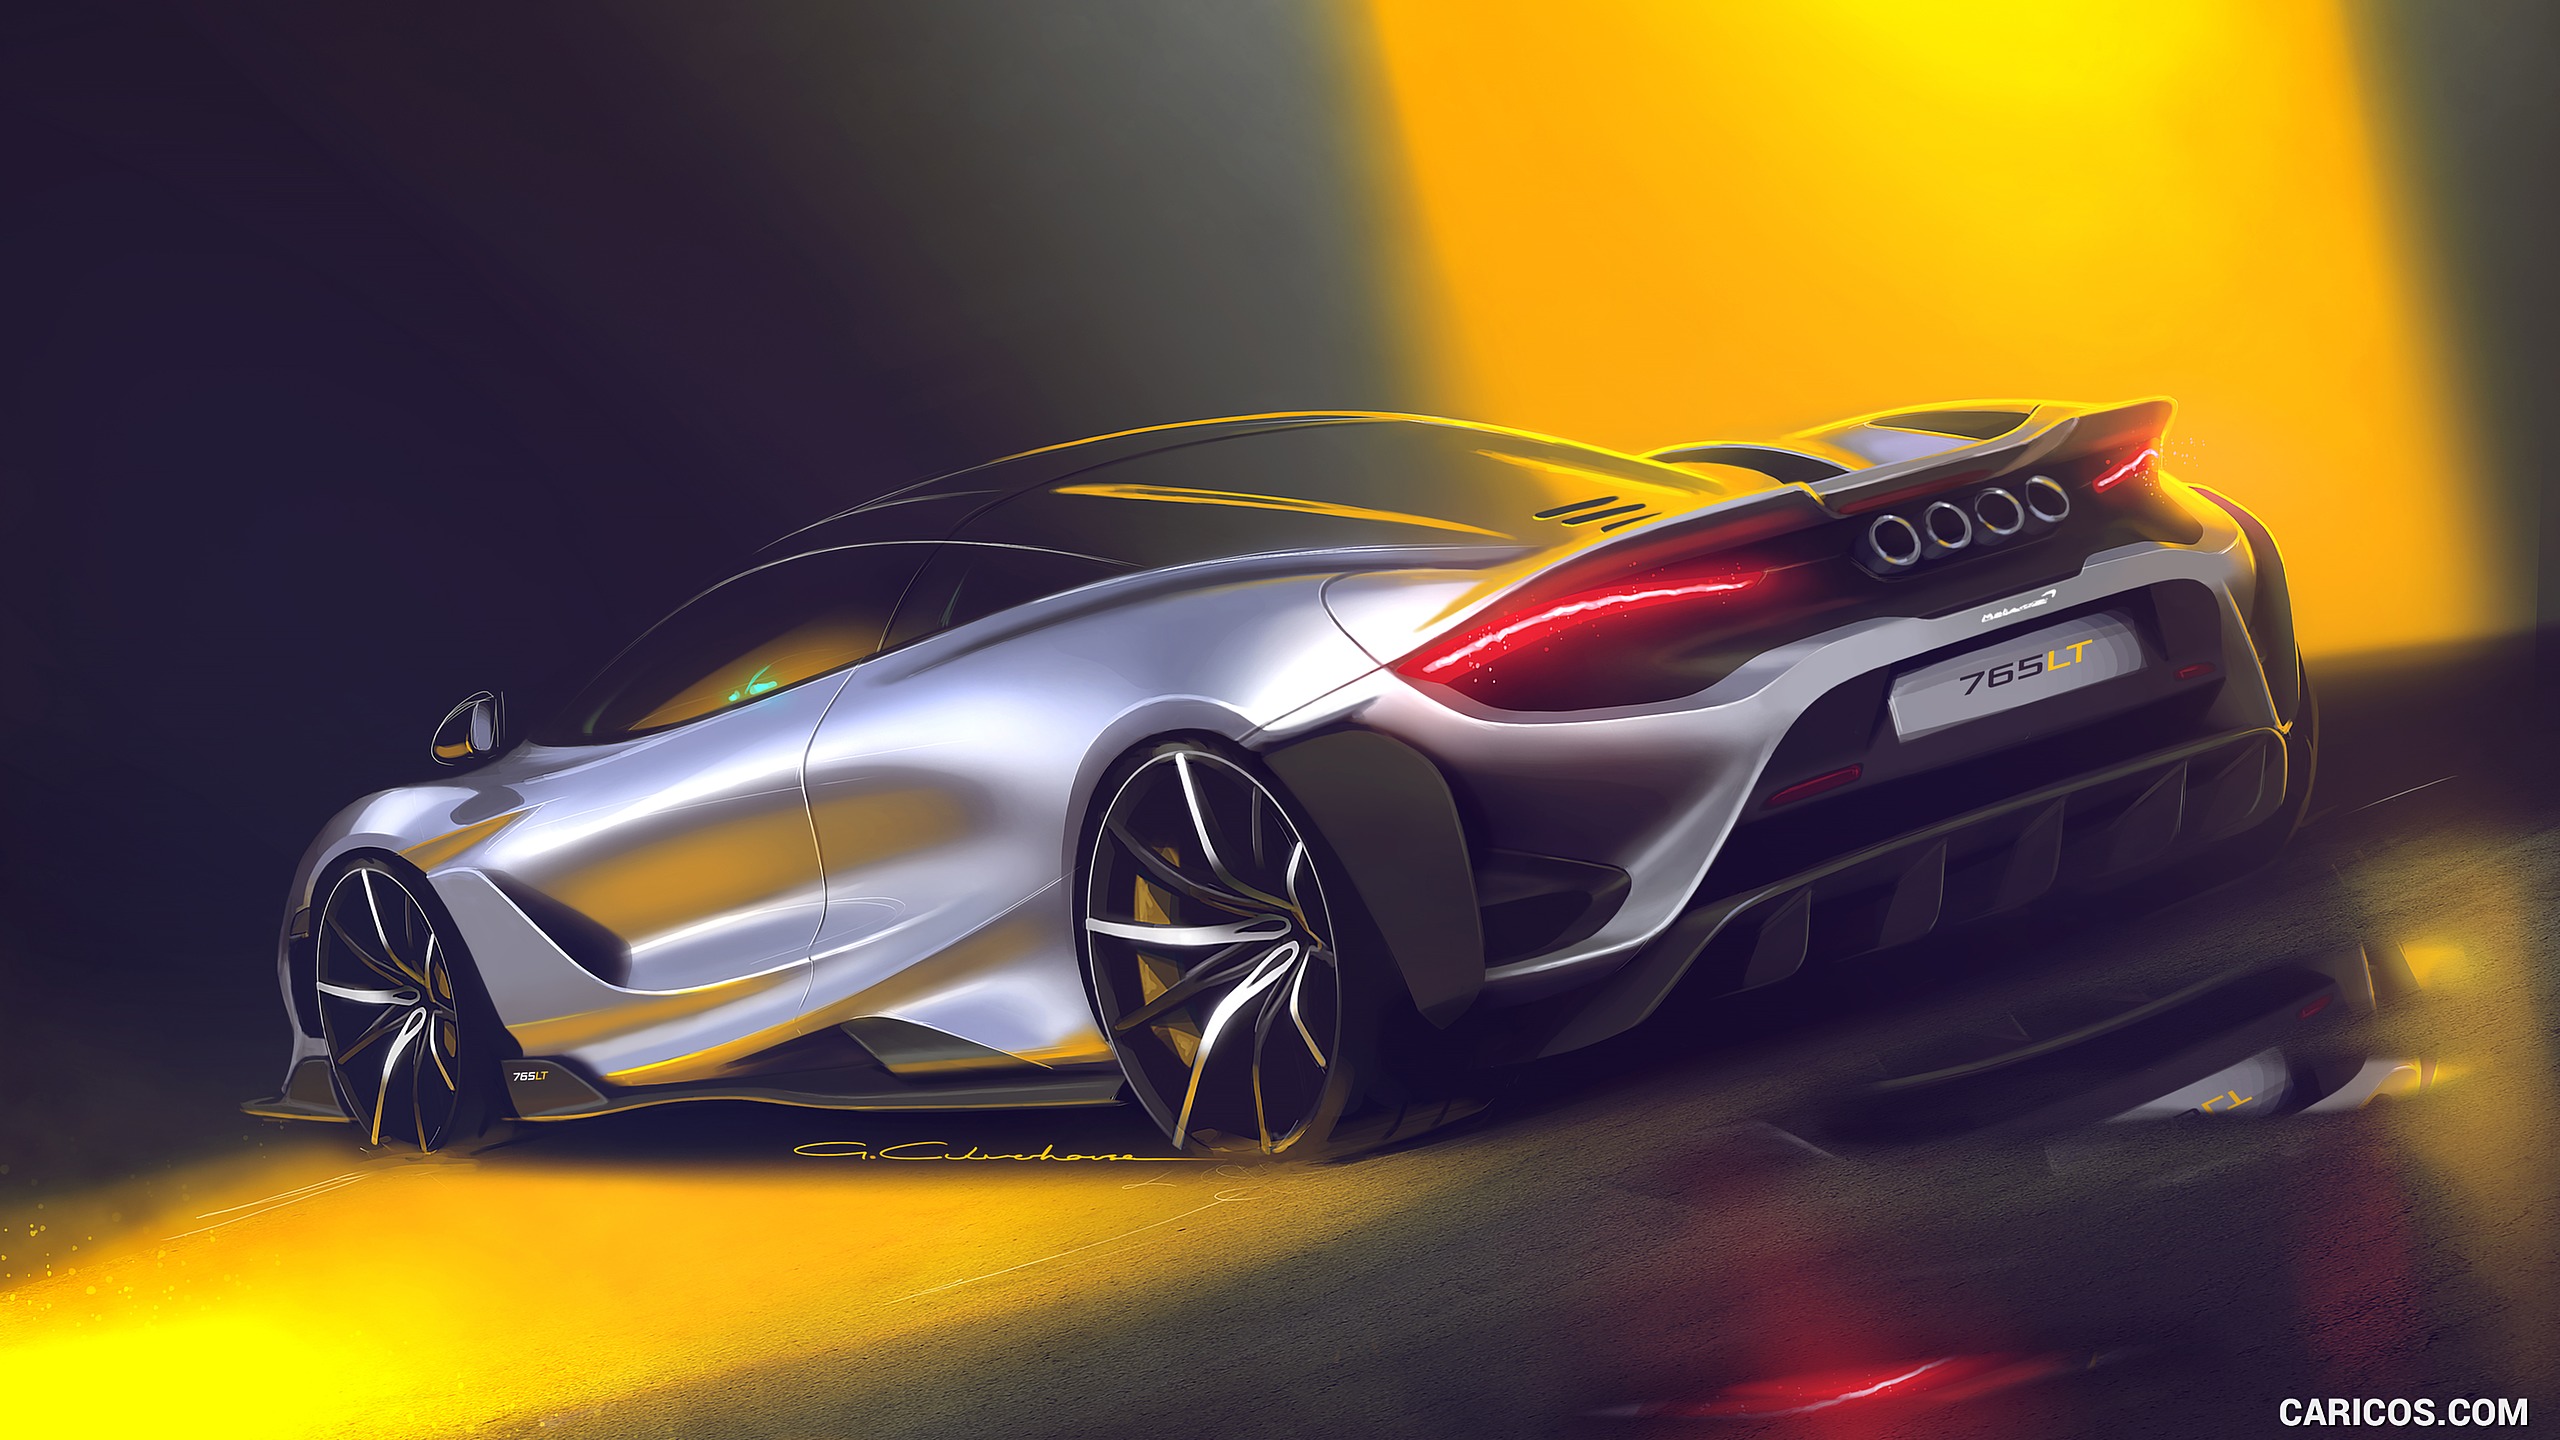 2021 McLaren 765LT - Design Sketch, #34 of 159